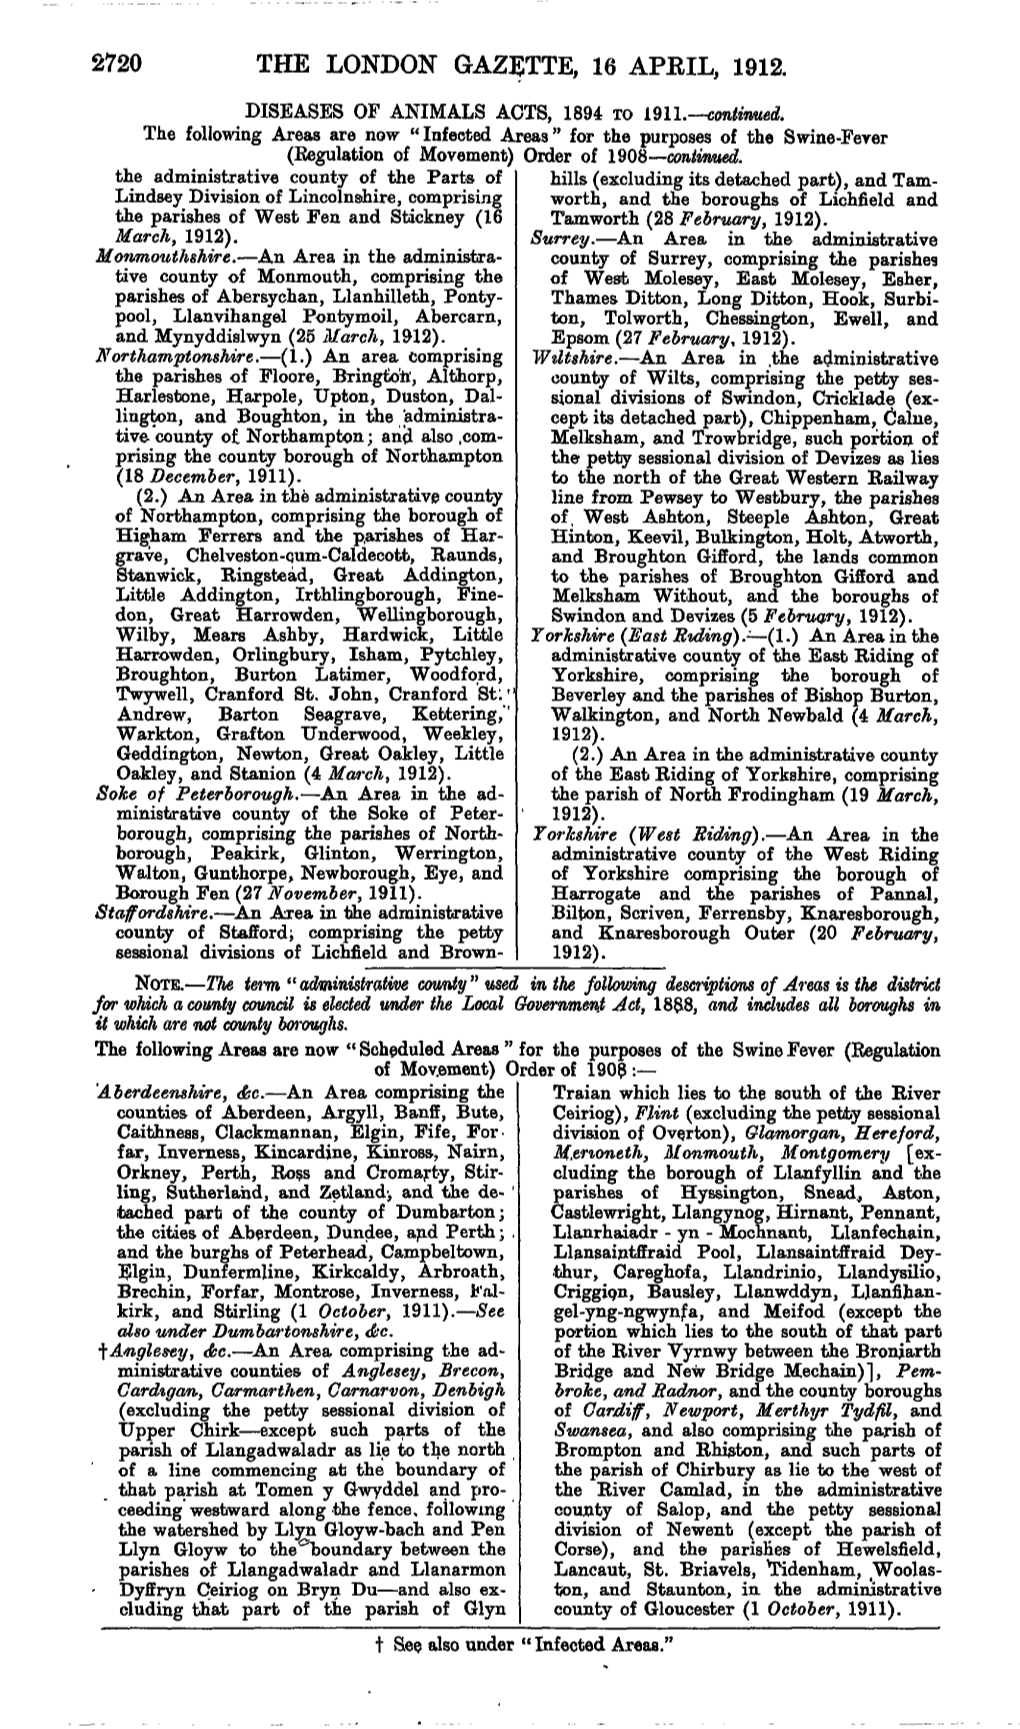 2720 the London Gazette, 16 April, 1912